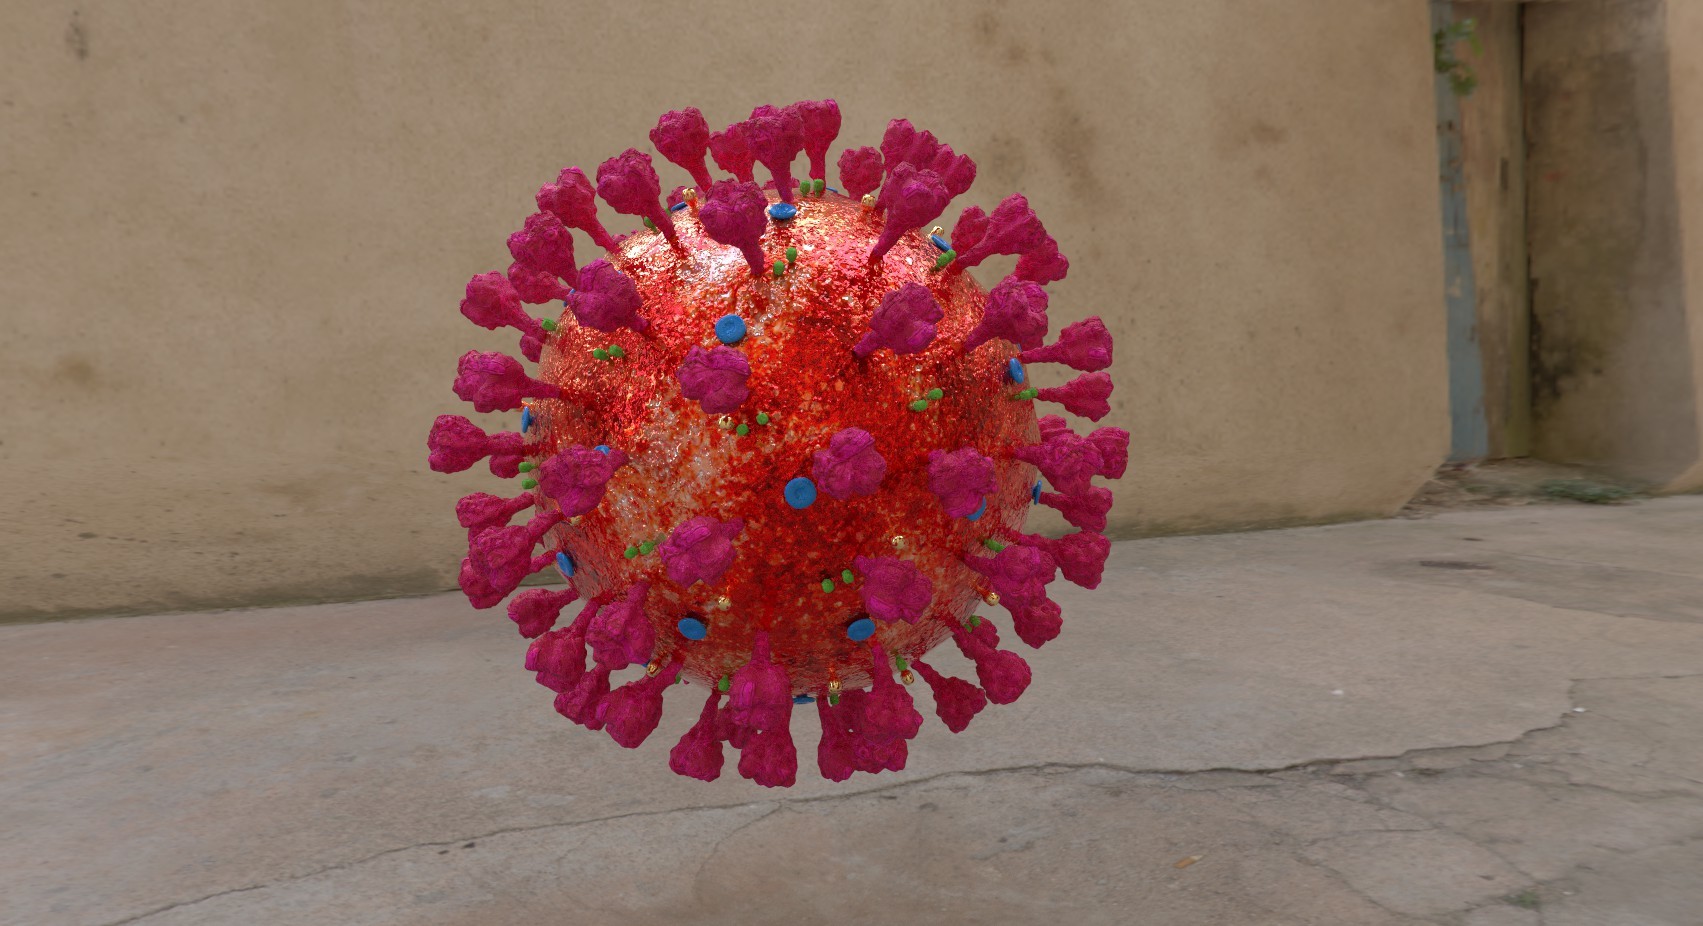 杆形病毒模型图片